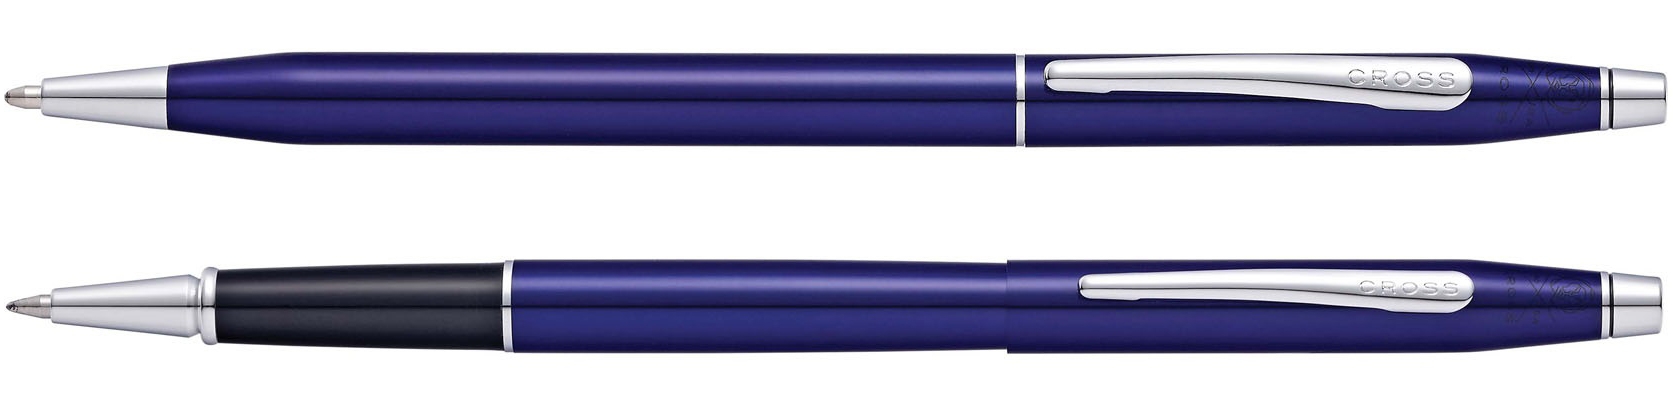 Набор Cross Classic Century Translucent Blue Lacquer: шариковая ручка и ручка-роллер, цвет - синий, синий, латунь